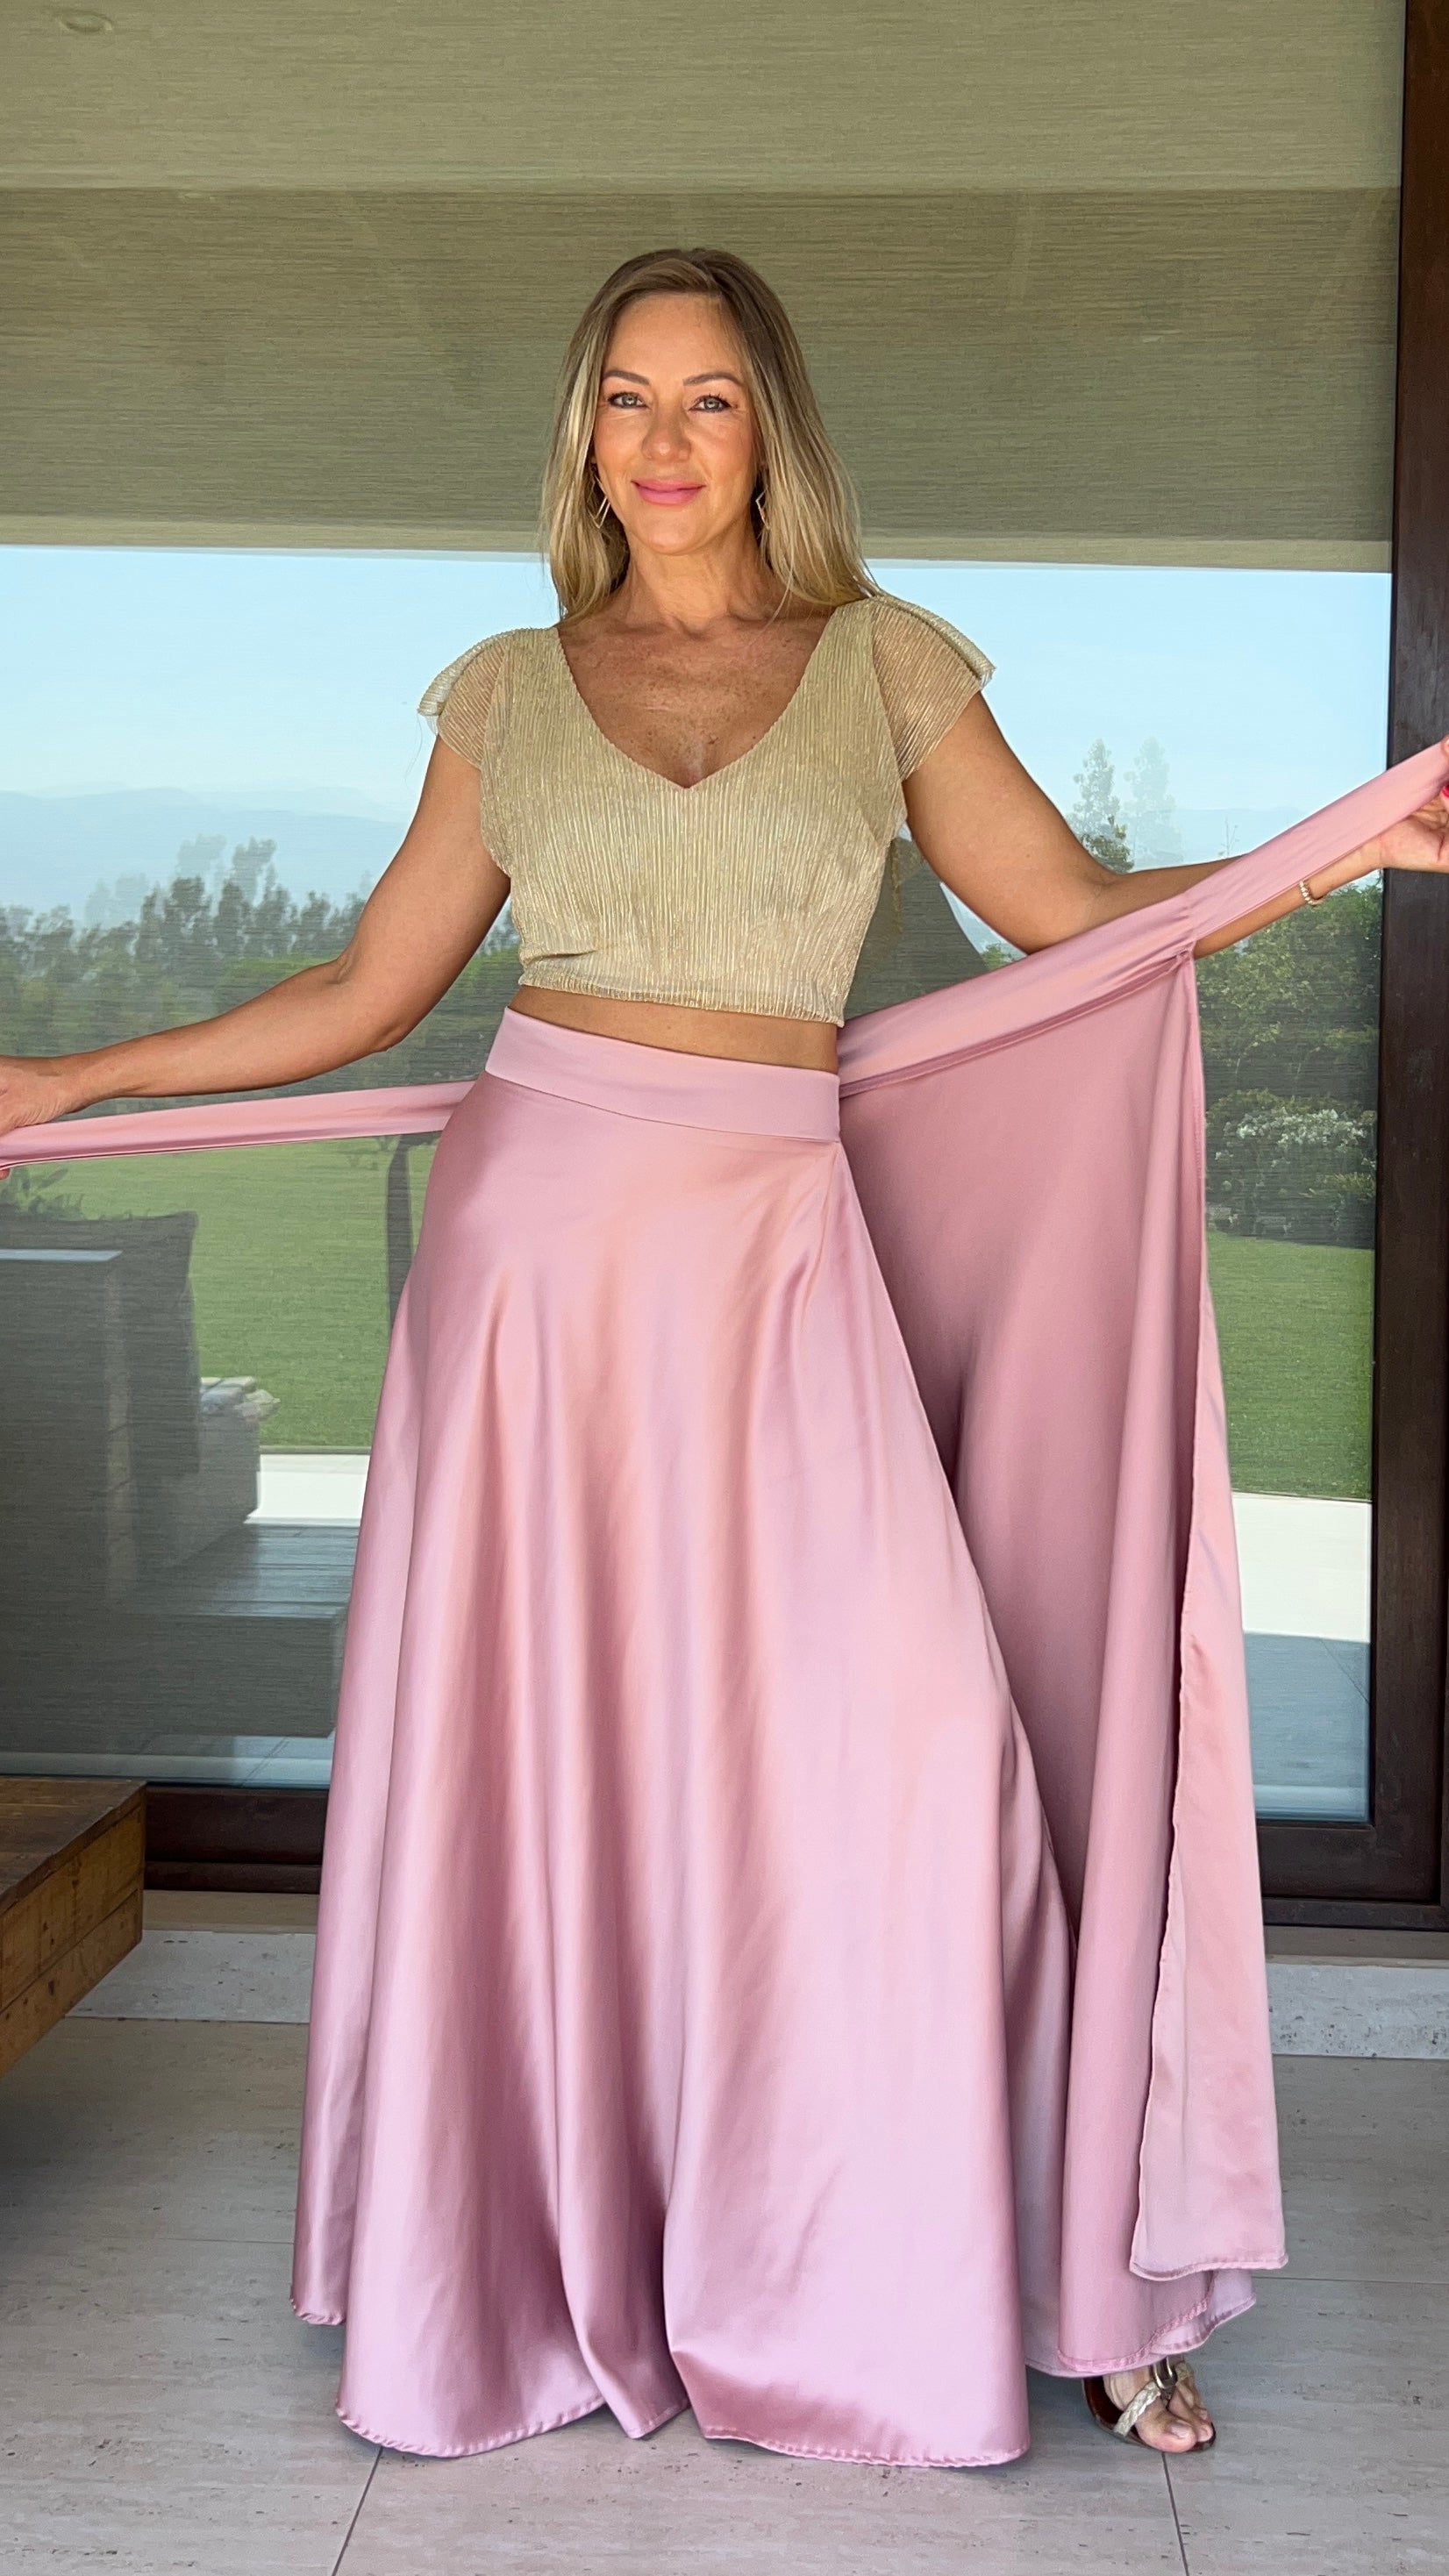 Falda envolvente piel de seda palo rosa| falda larga de fiesta mujer palo rosa | Amoramar.cl 2